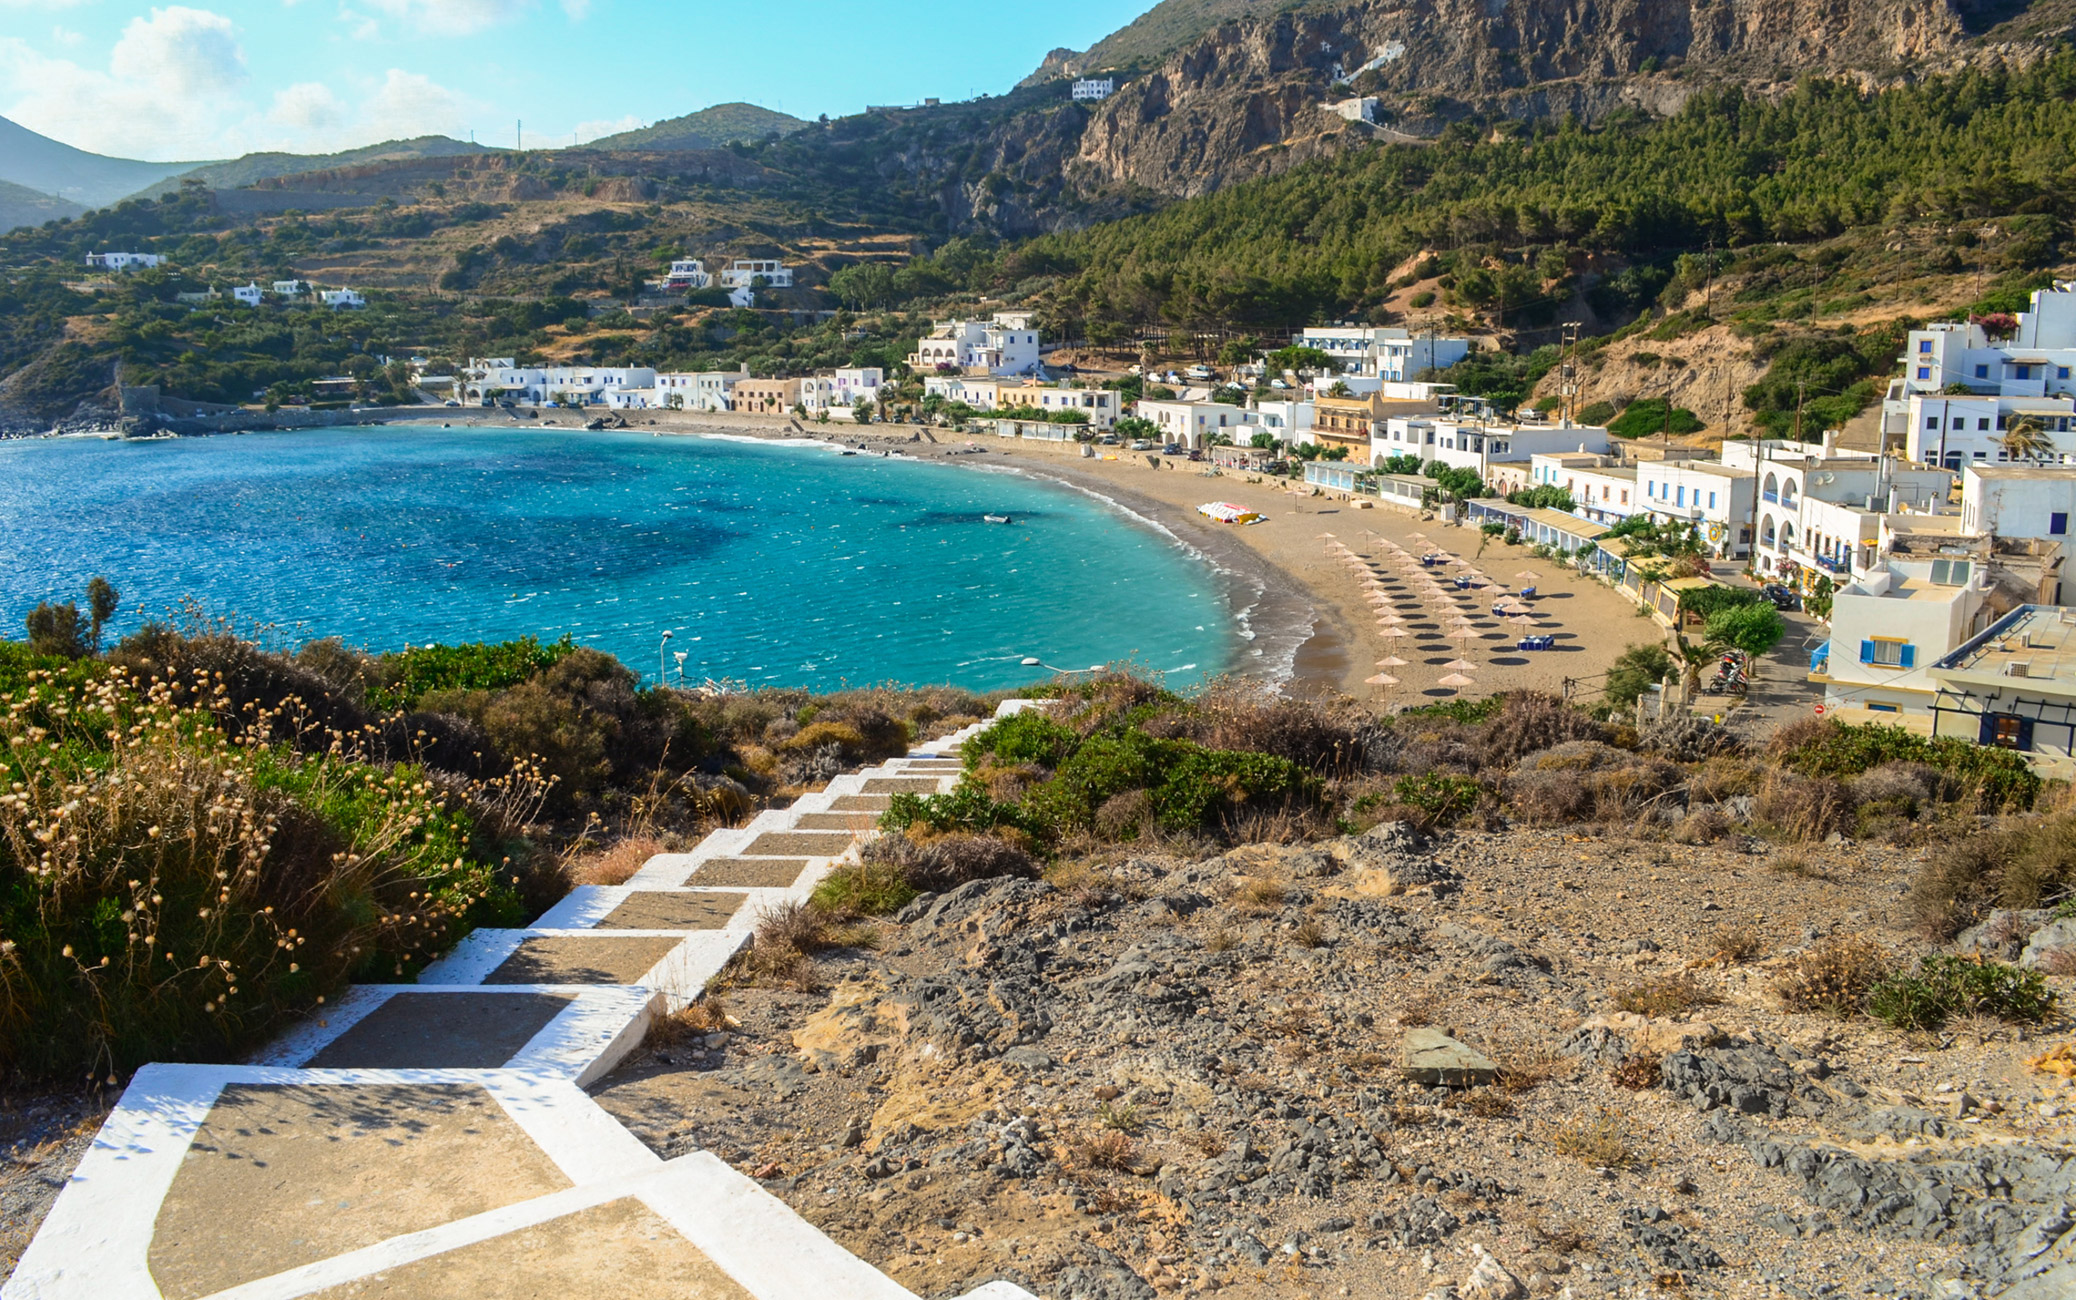 Αυτό είναι το πιο ερωtικό νησί μας σύμφωνα με τους αρχαίους Έλληνες – Το προστάτευε η θεά Αφροδίτη